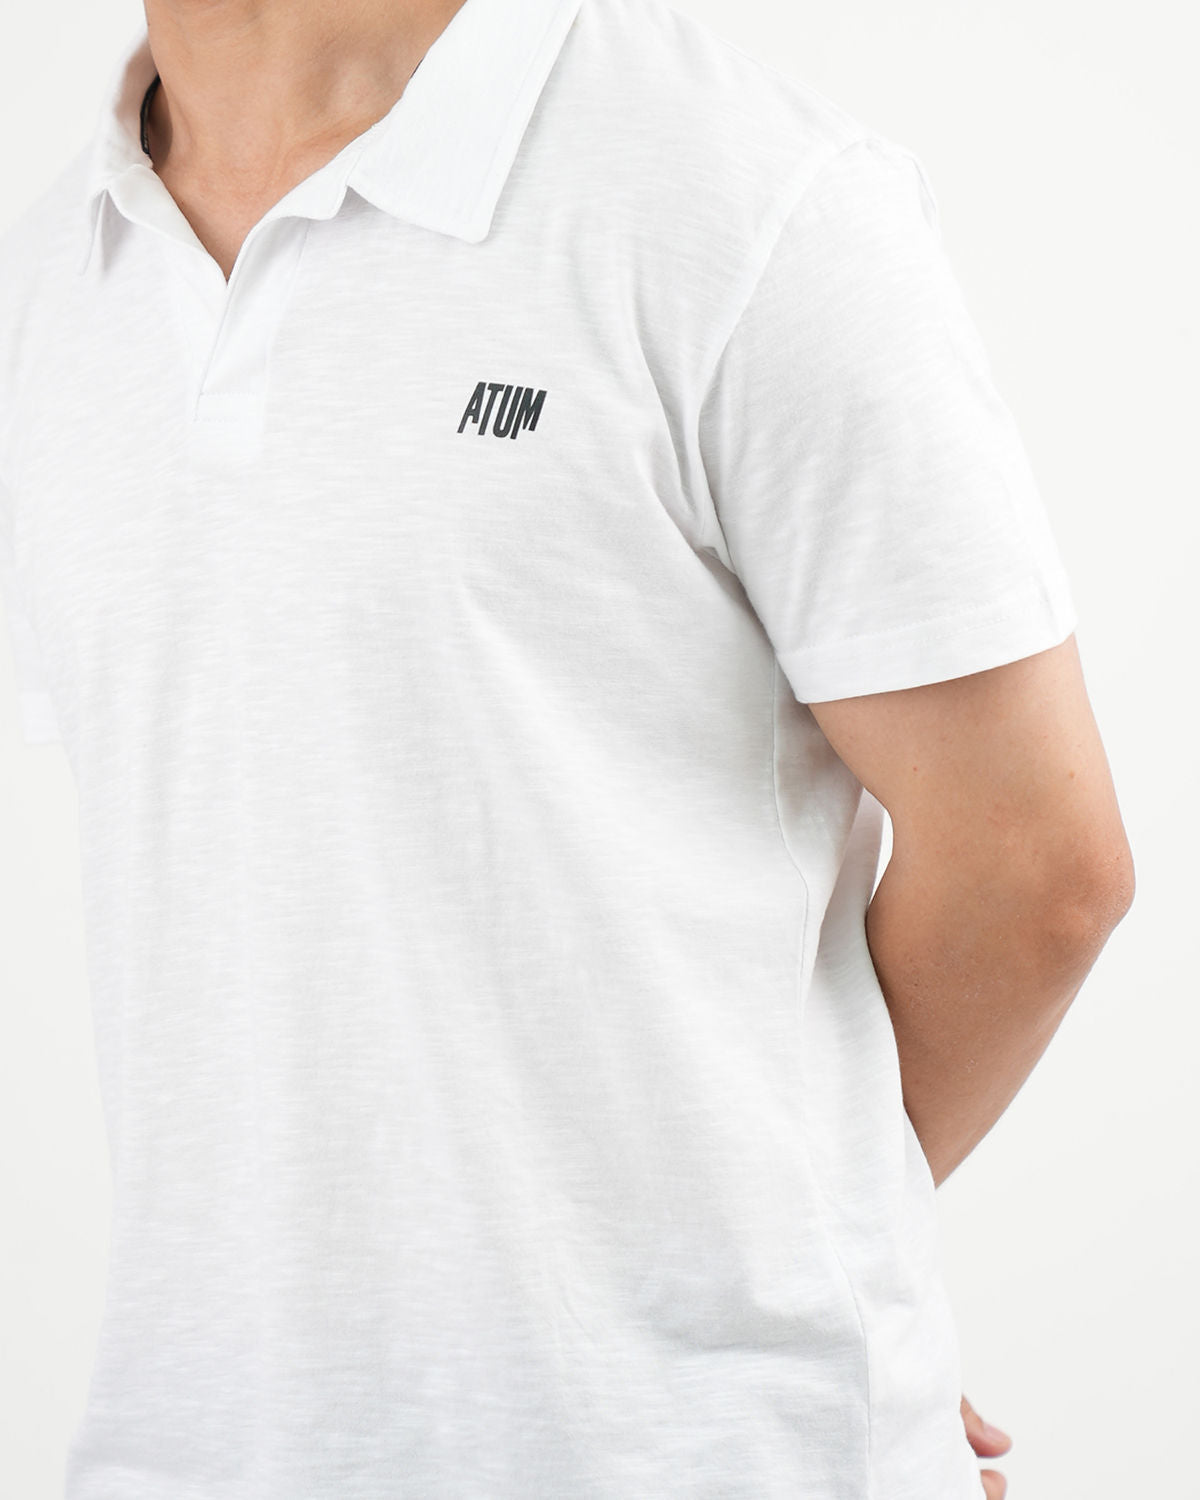 Comfort Slub Men's Polo T-Shirt - White - atum's logo